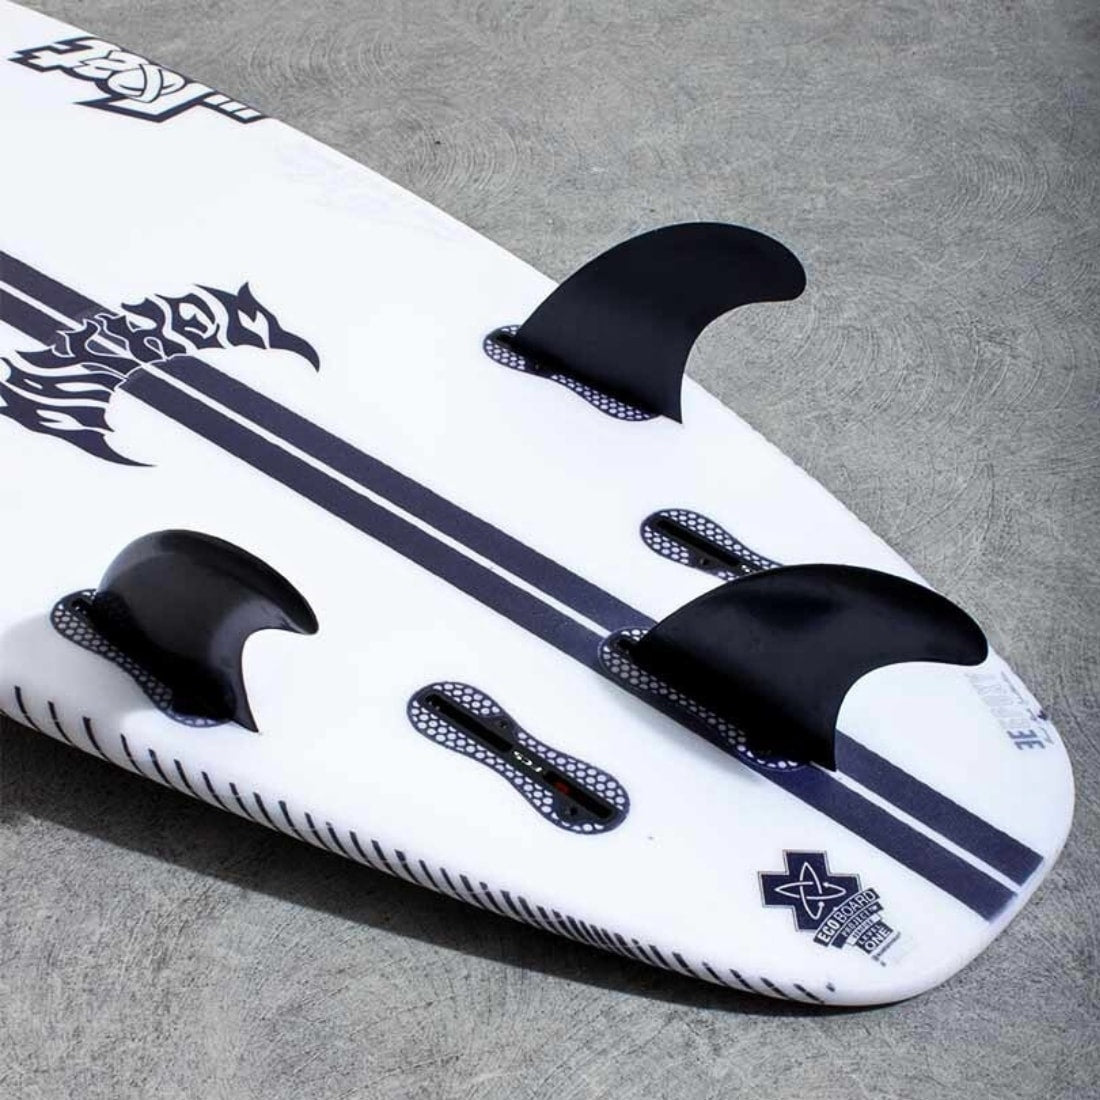 Alder Replacement 2 Tab G5 Surfboard Fins - Black - FCS 1 Fins by Alder Medium Fins